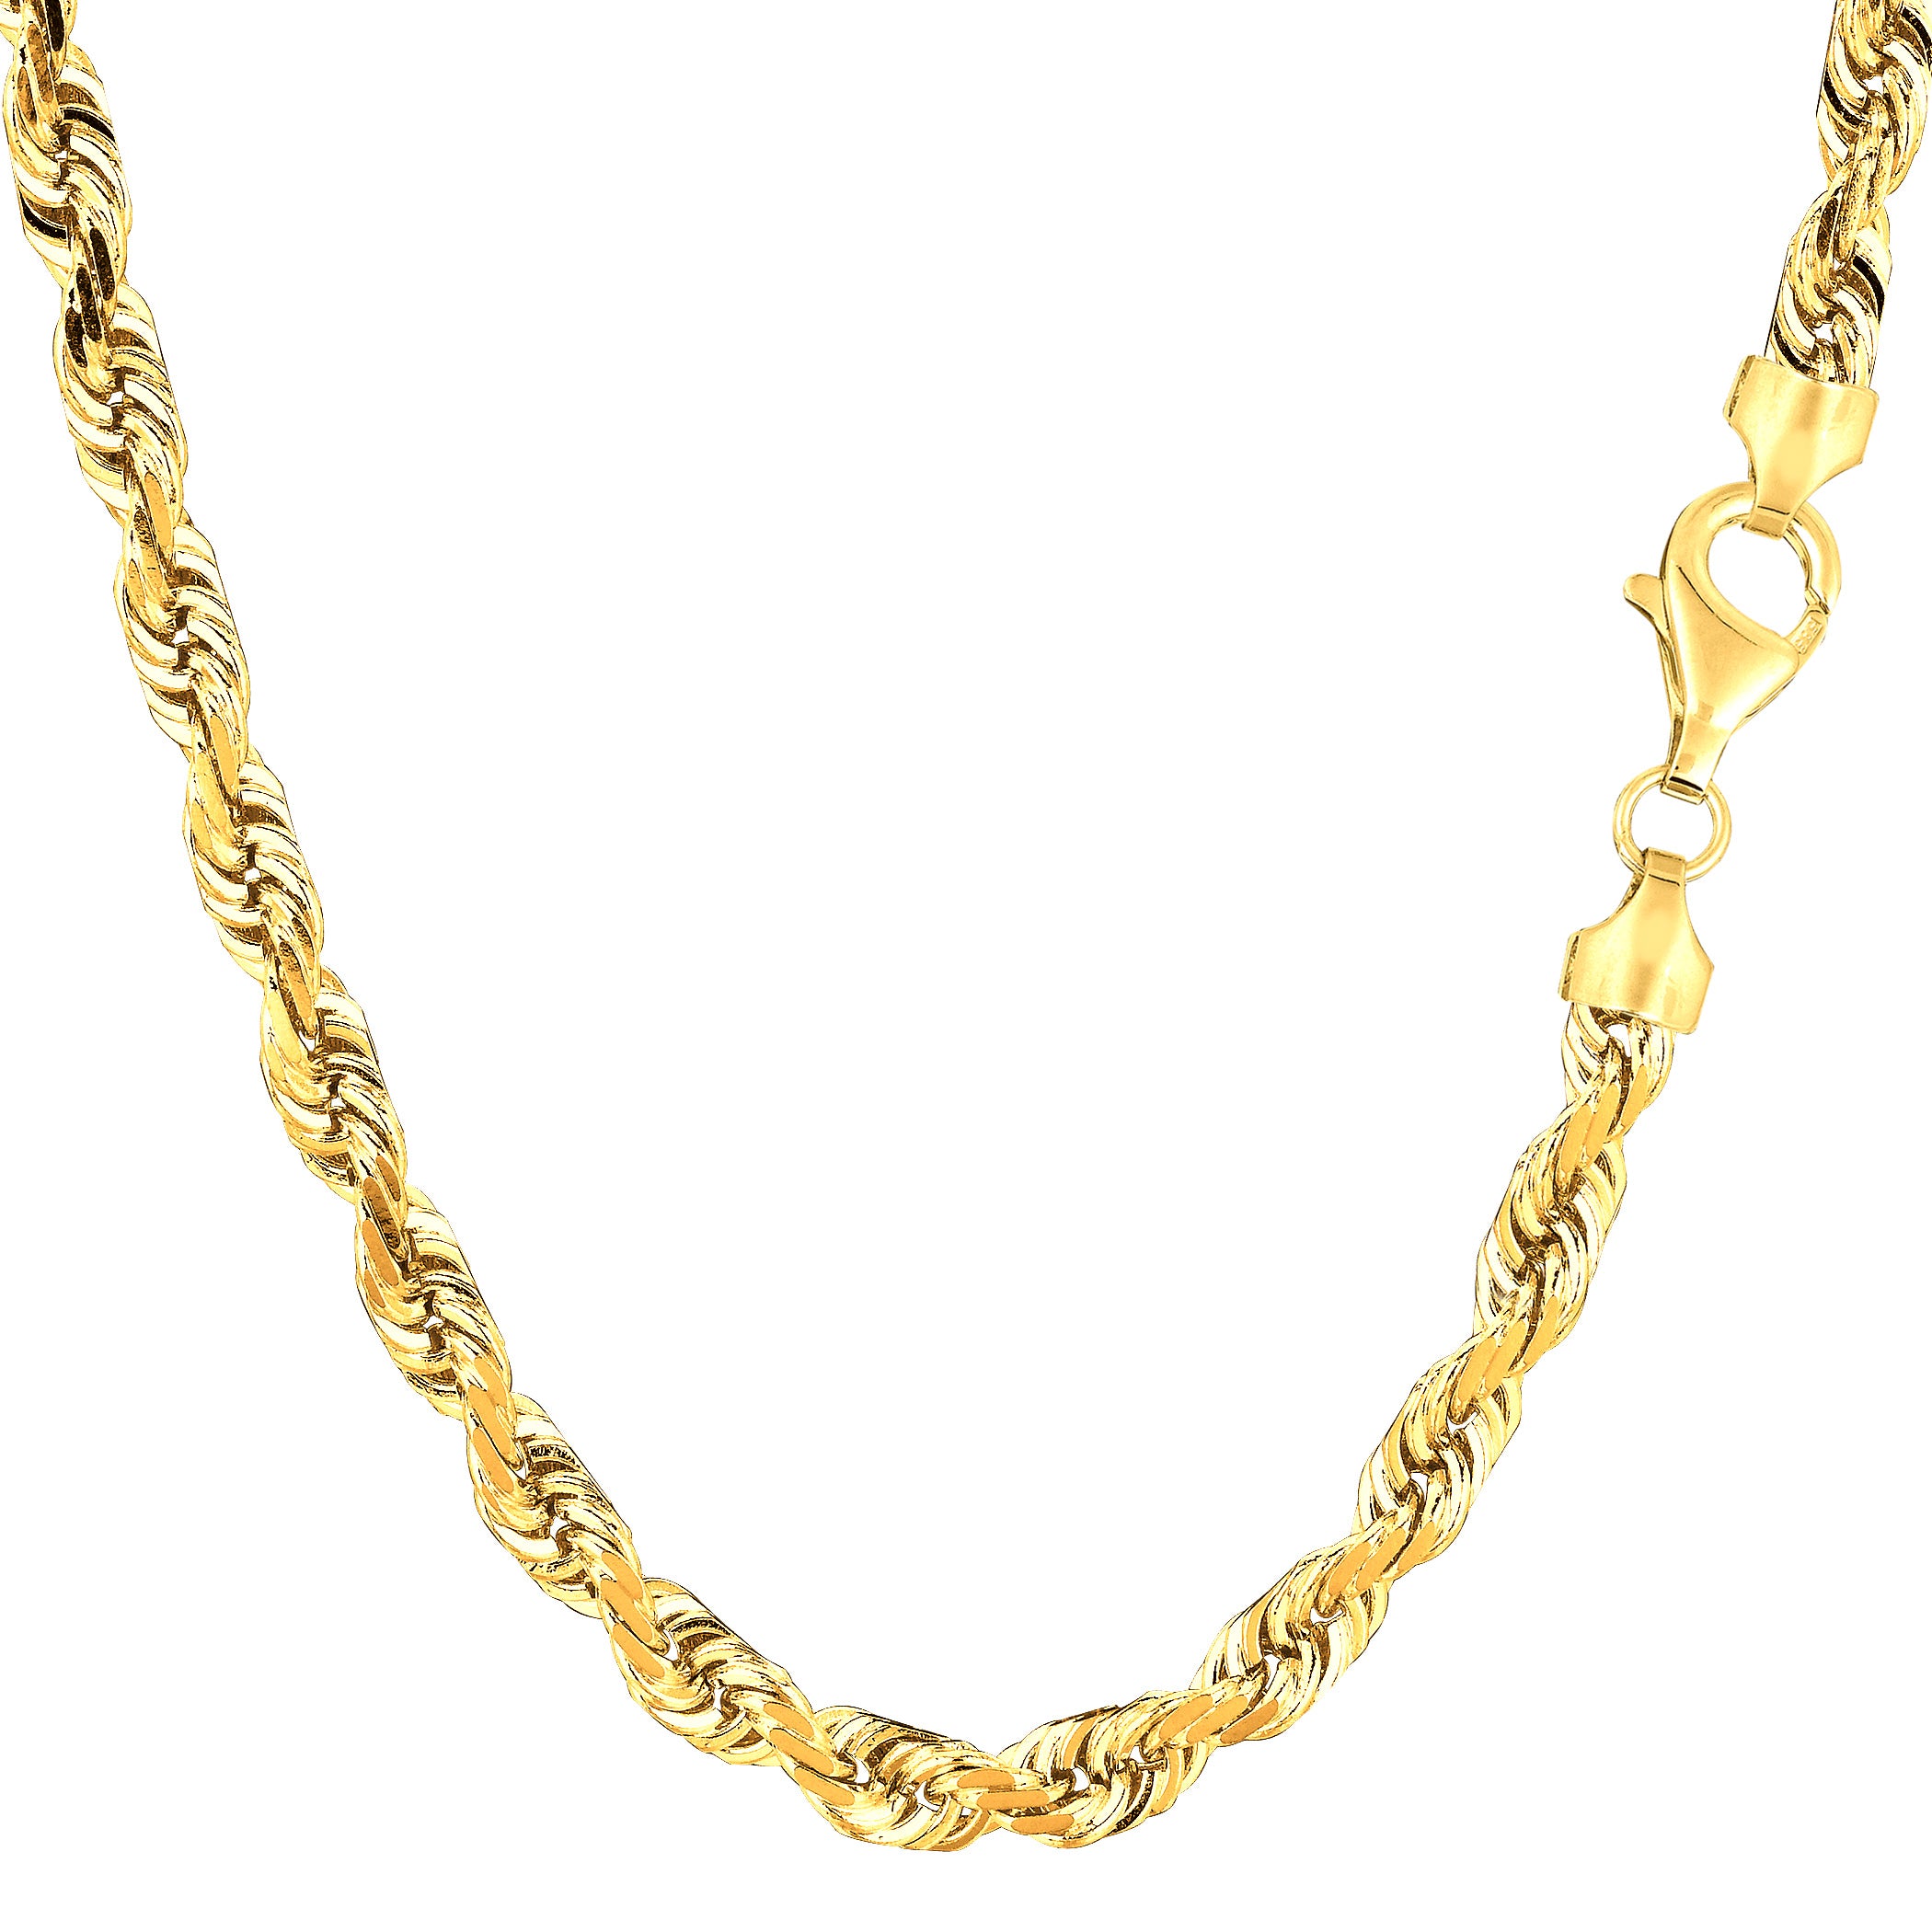 14 k gult solidt guld diamantskuret repkedja halsband, 5,0 mm fina designersmycken för män och kvinnor